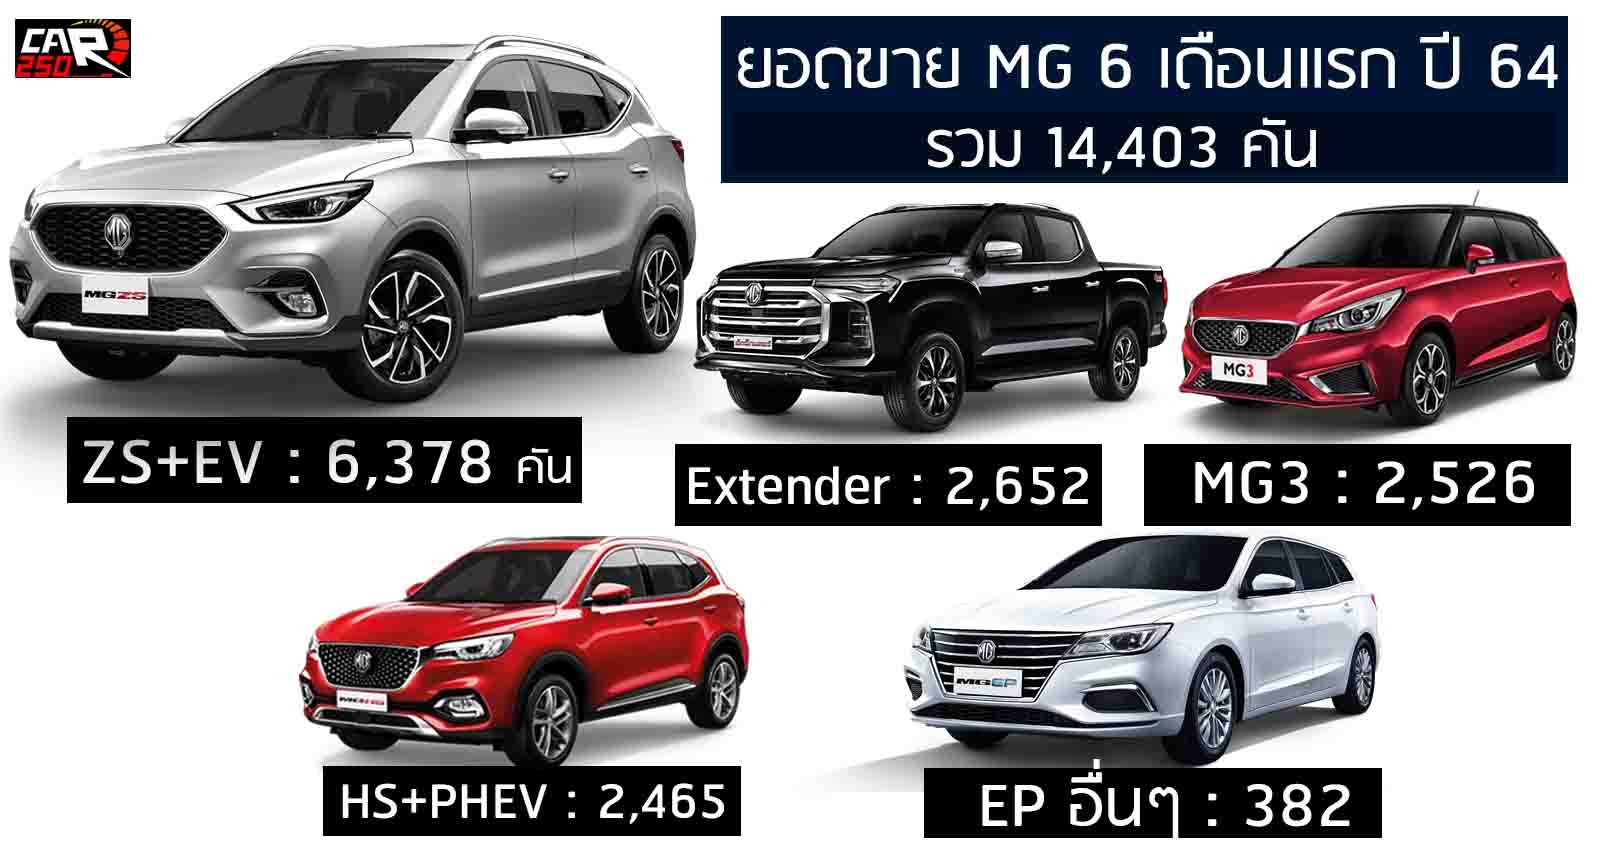 ยอดขาย MG 6 เดือนแรกปี 64 ในไทย รวม 14,403 คัน